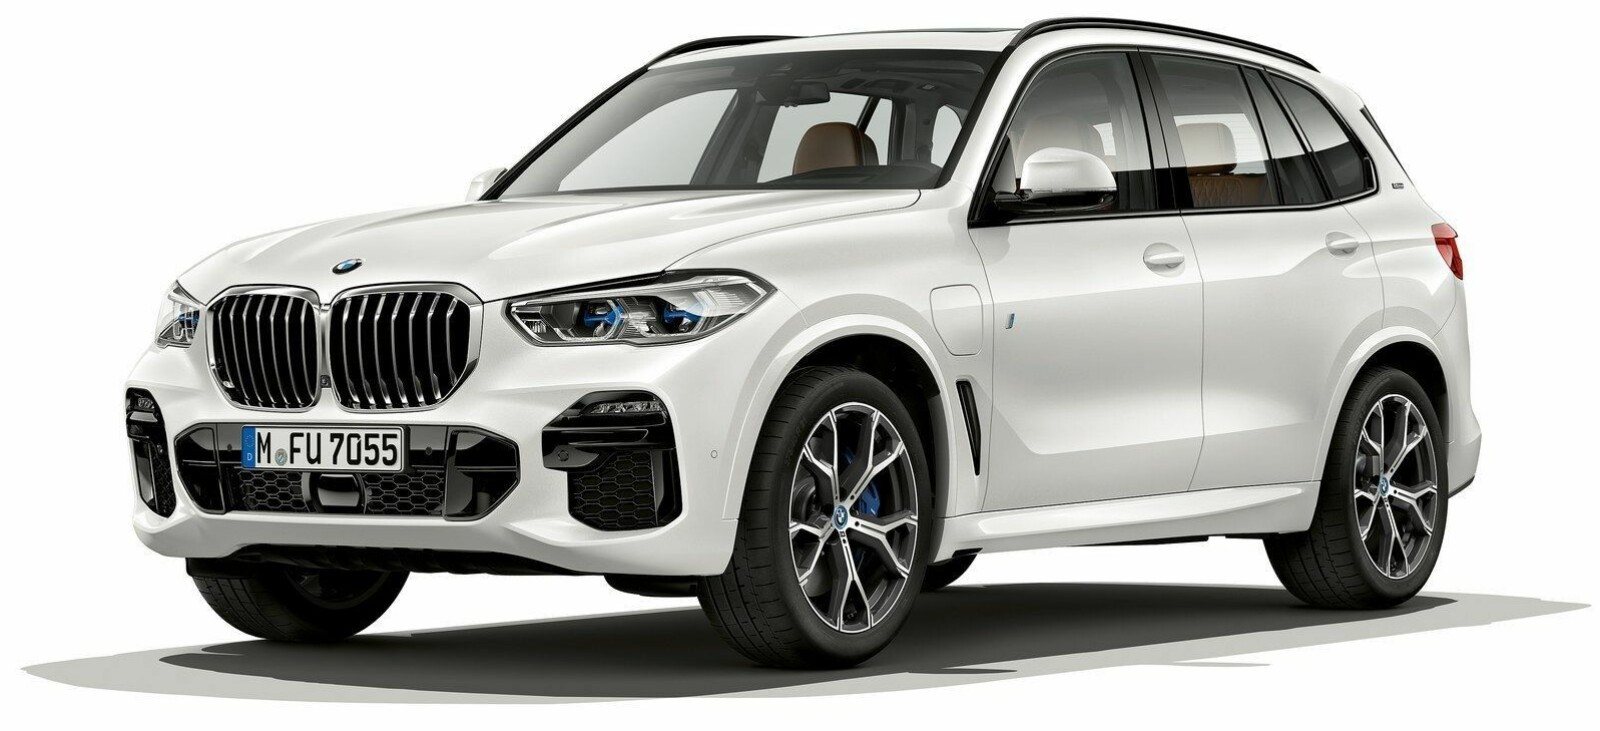 Nye BMW X5 er på vei til norske kunder. Først ut er den med diesel- og bensinmotorer. Det er imidlertid den ladbare hybriden som ventes å bli volummodellen. Den kommer først andre halvår i 2019.